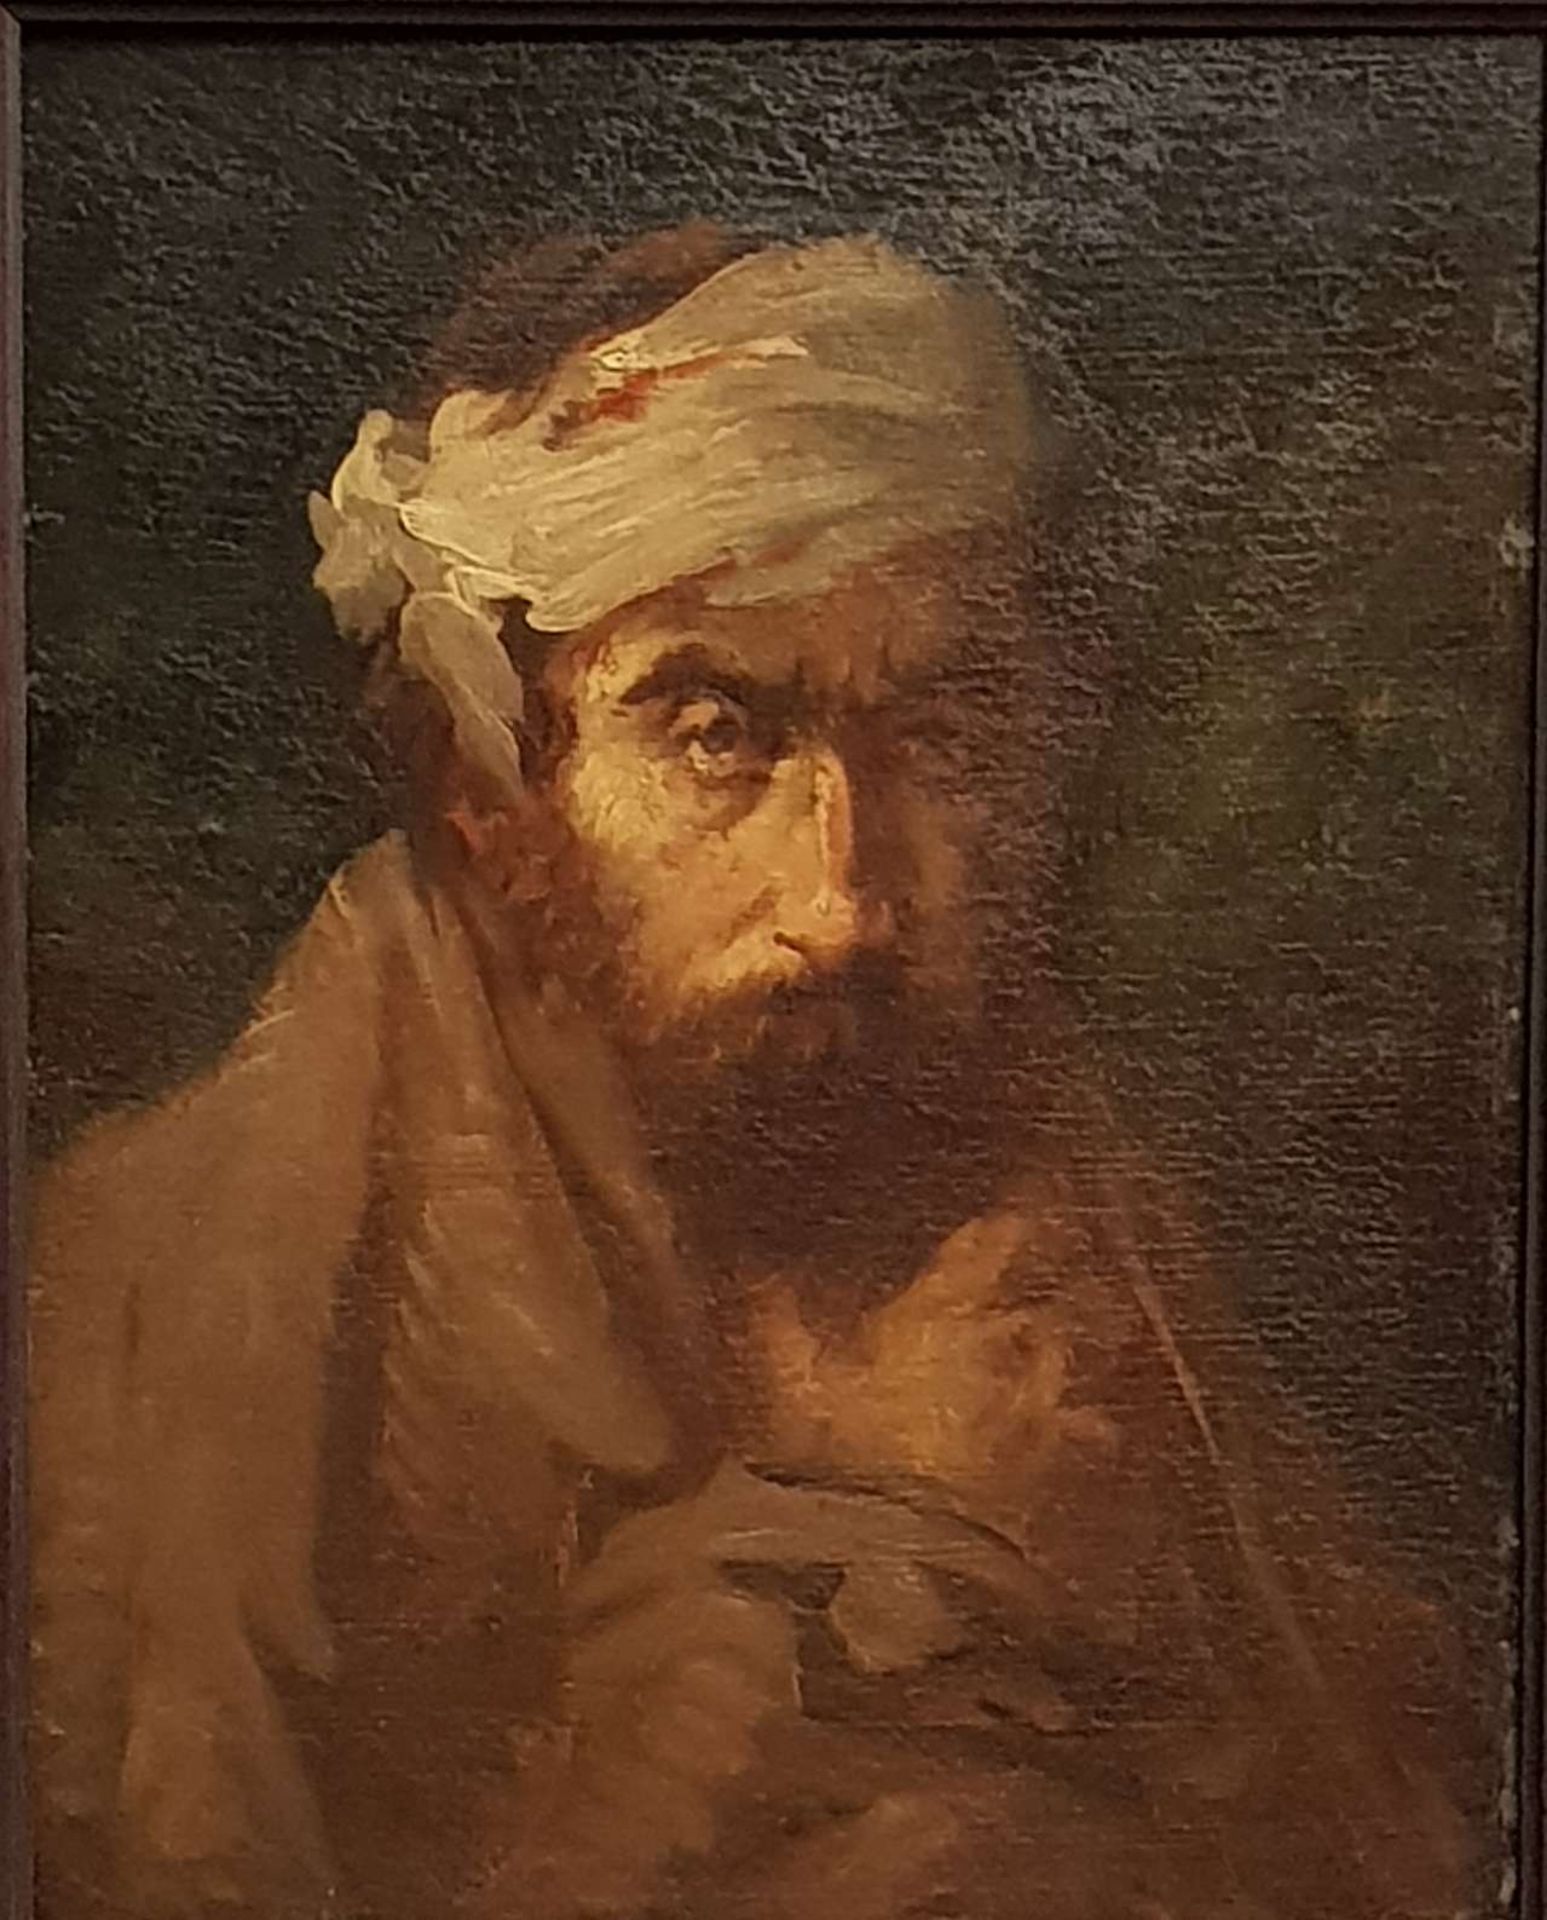 GERICAULT, Jean Louis André Theodore, Maler, Bildhauer, Zeichner, Lithograph, *26.9.1791 Rouen, +